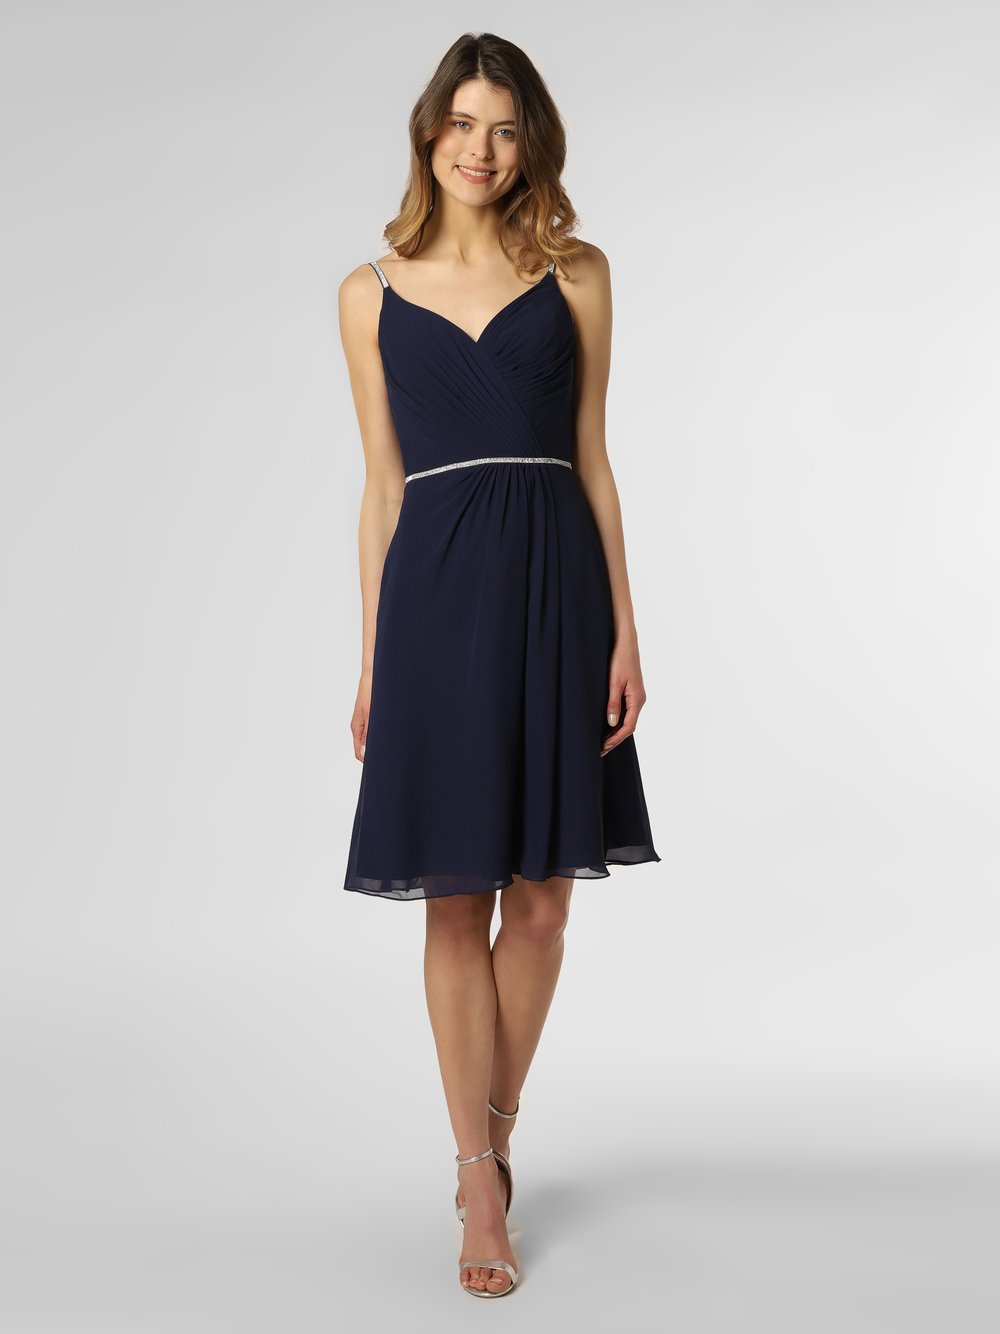 Obraz przedstawiający Luxuar Fashion Damska sukienka wieczorowa Kobiety niebieski jednolity, 36